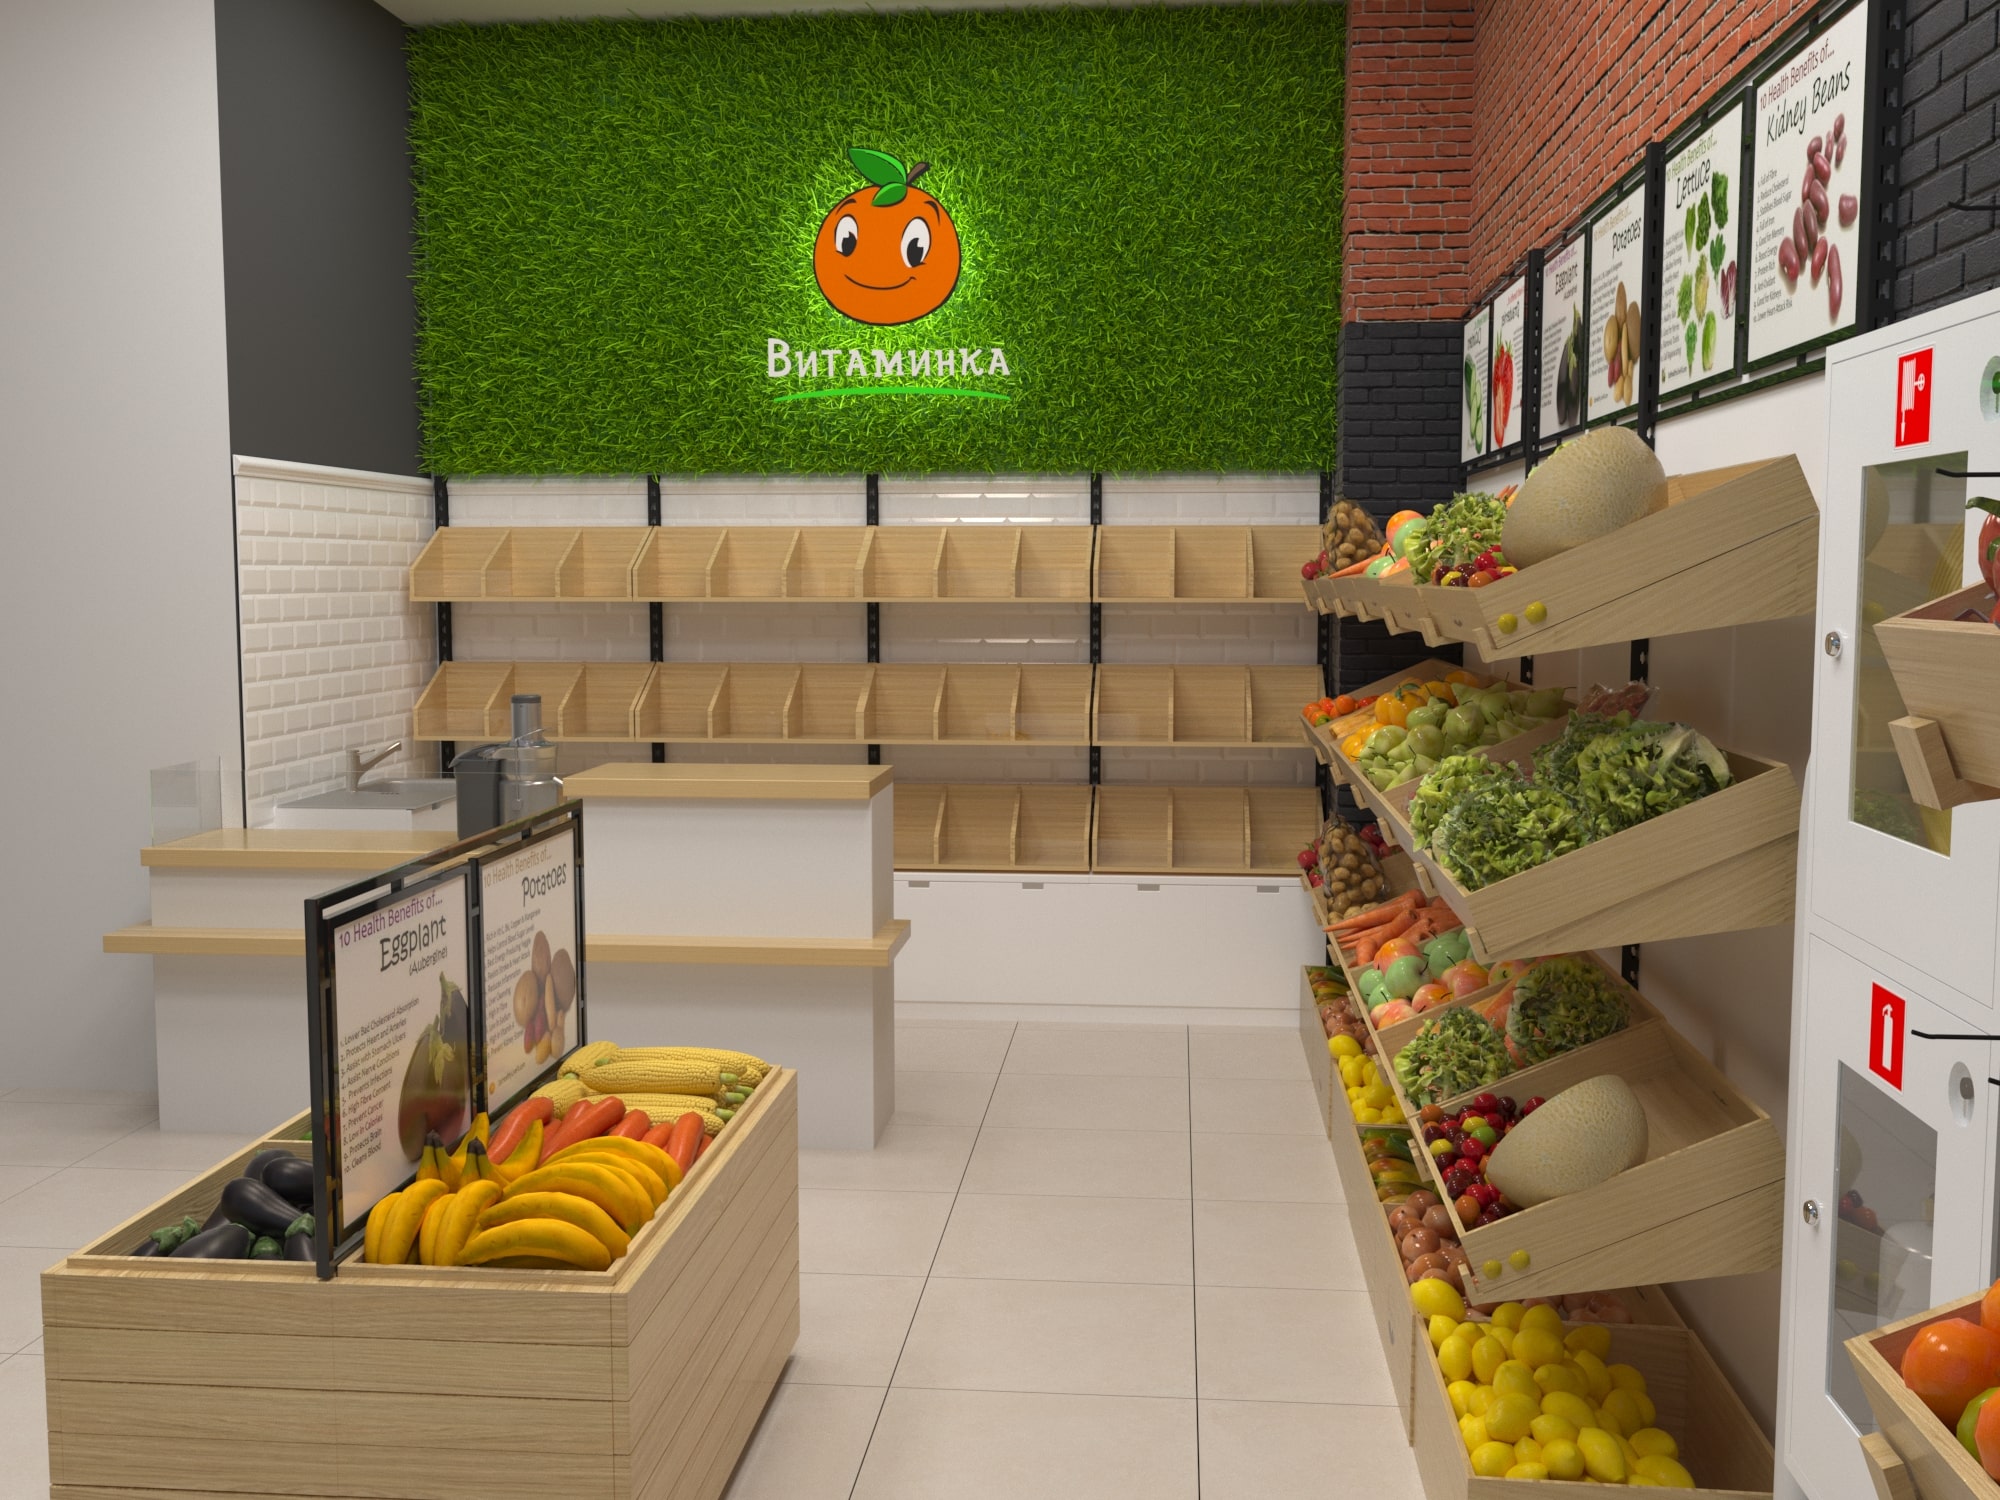 Магазин 25 овощи. Дизайнерские решения для магазина овощей. Интерьер магазина овощей и фруктов. Декор овощного магазина. Декор для продуктового магазина.